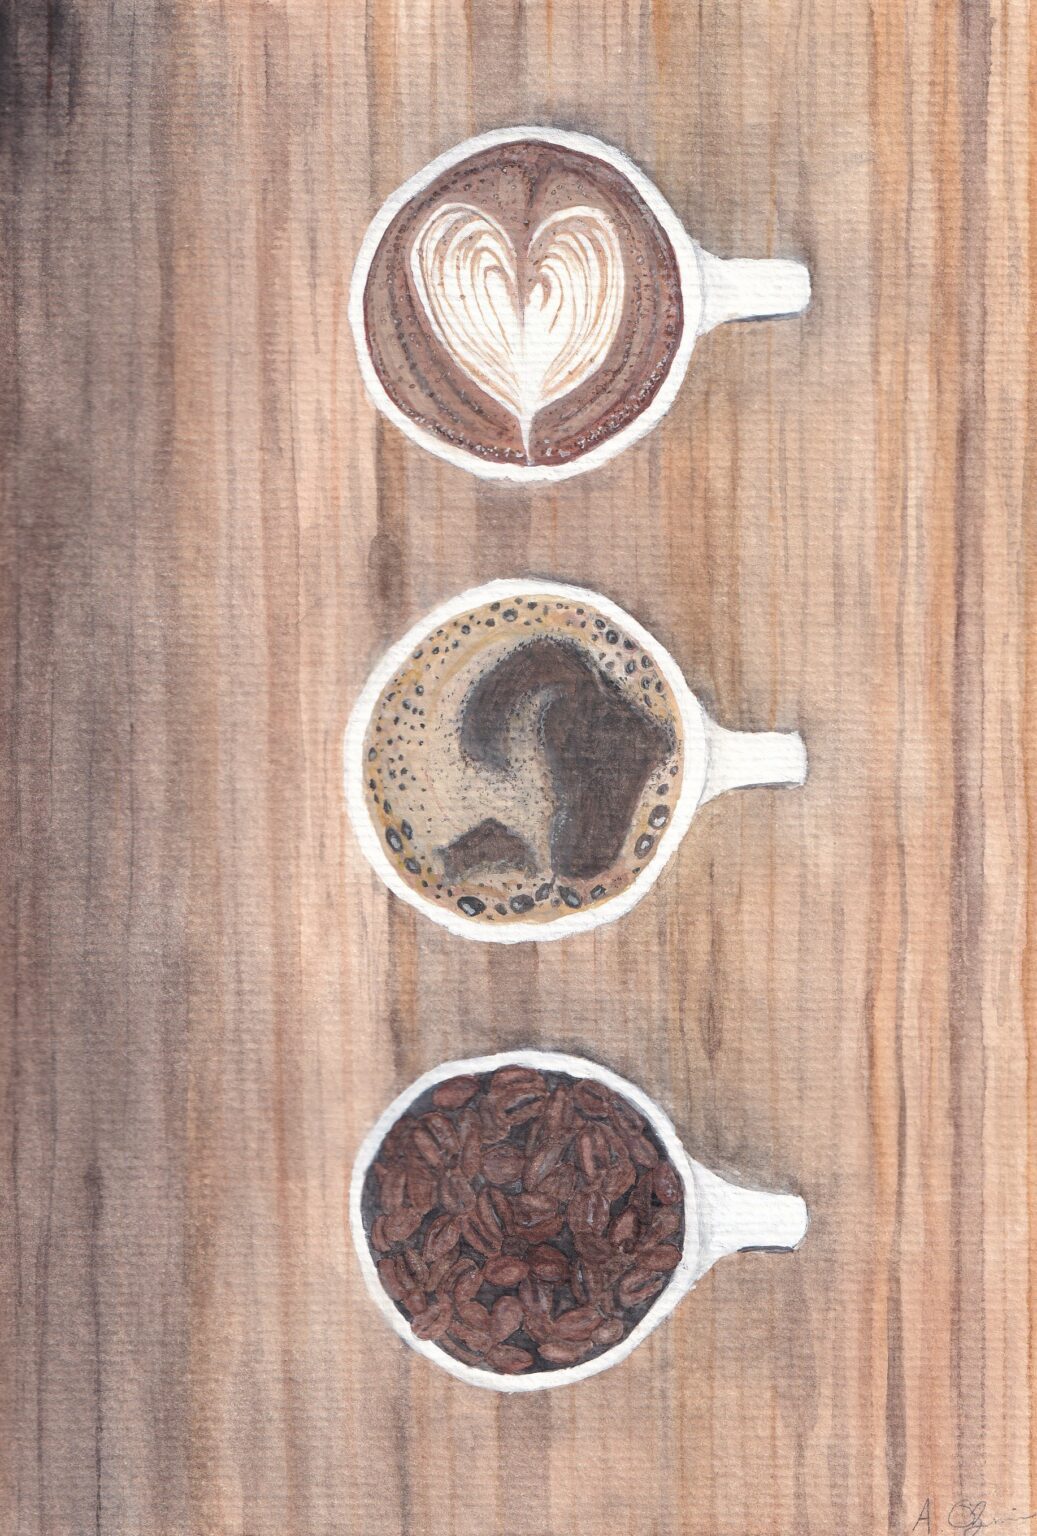 Malerei cafe kaffee im tasse espresso cappuccino Bakerei Lebensmittel Essen Kunst aquarell Kunst Rems Murr Kreis Sulzbach an der Murr Alice Obermeier